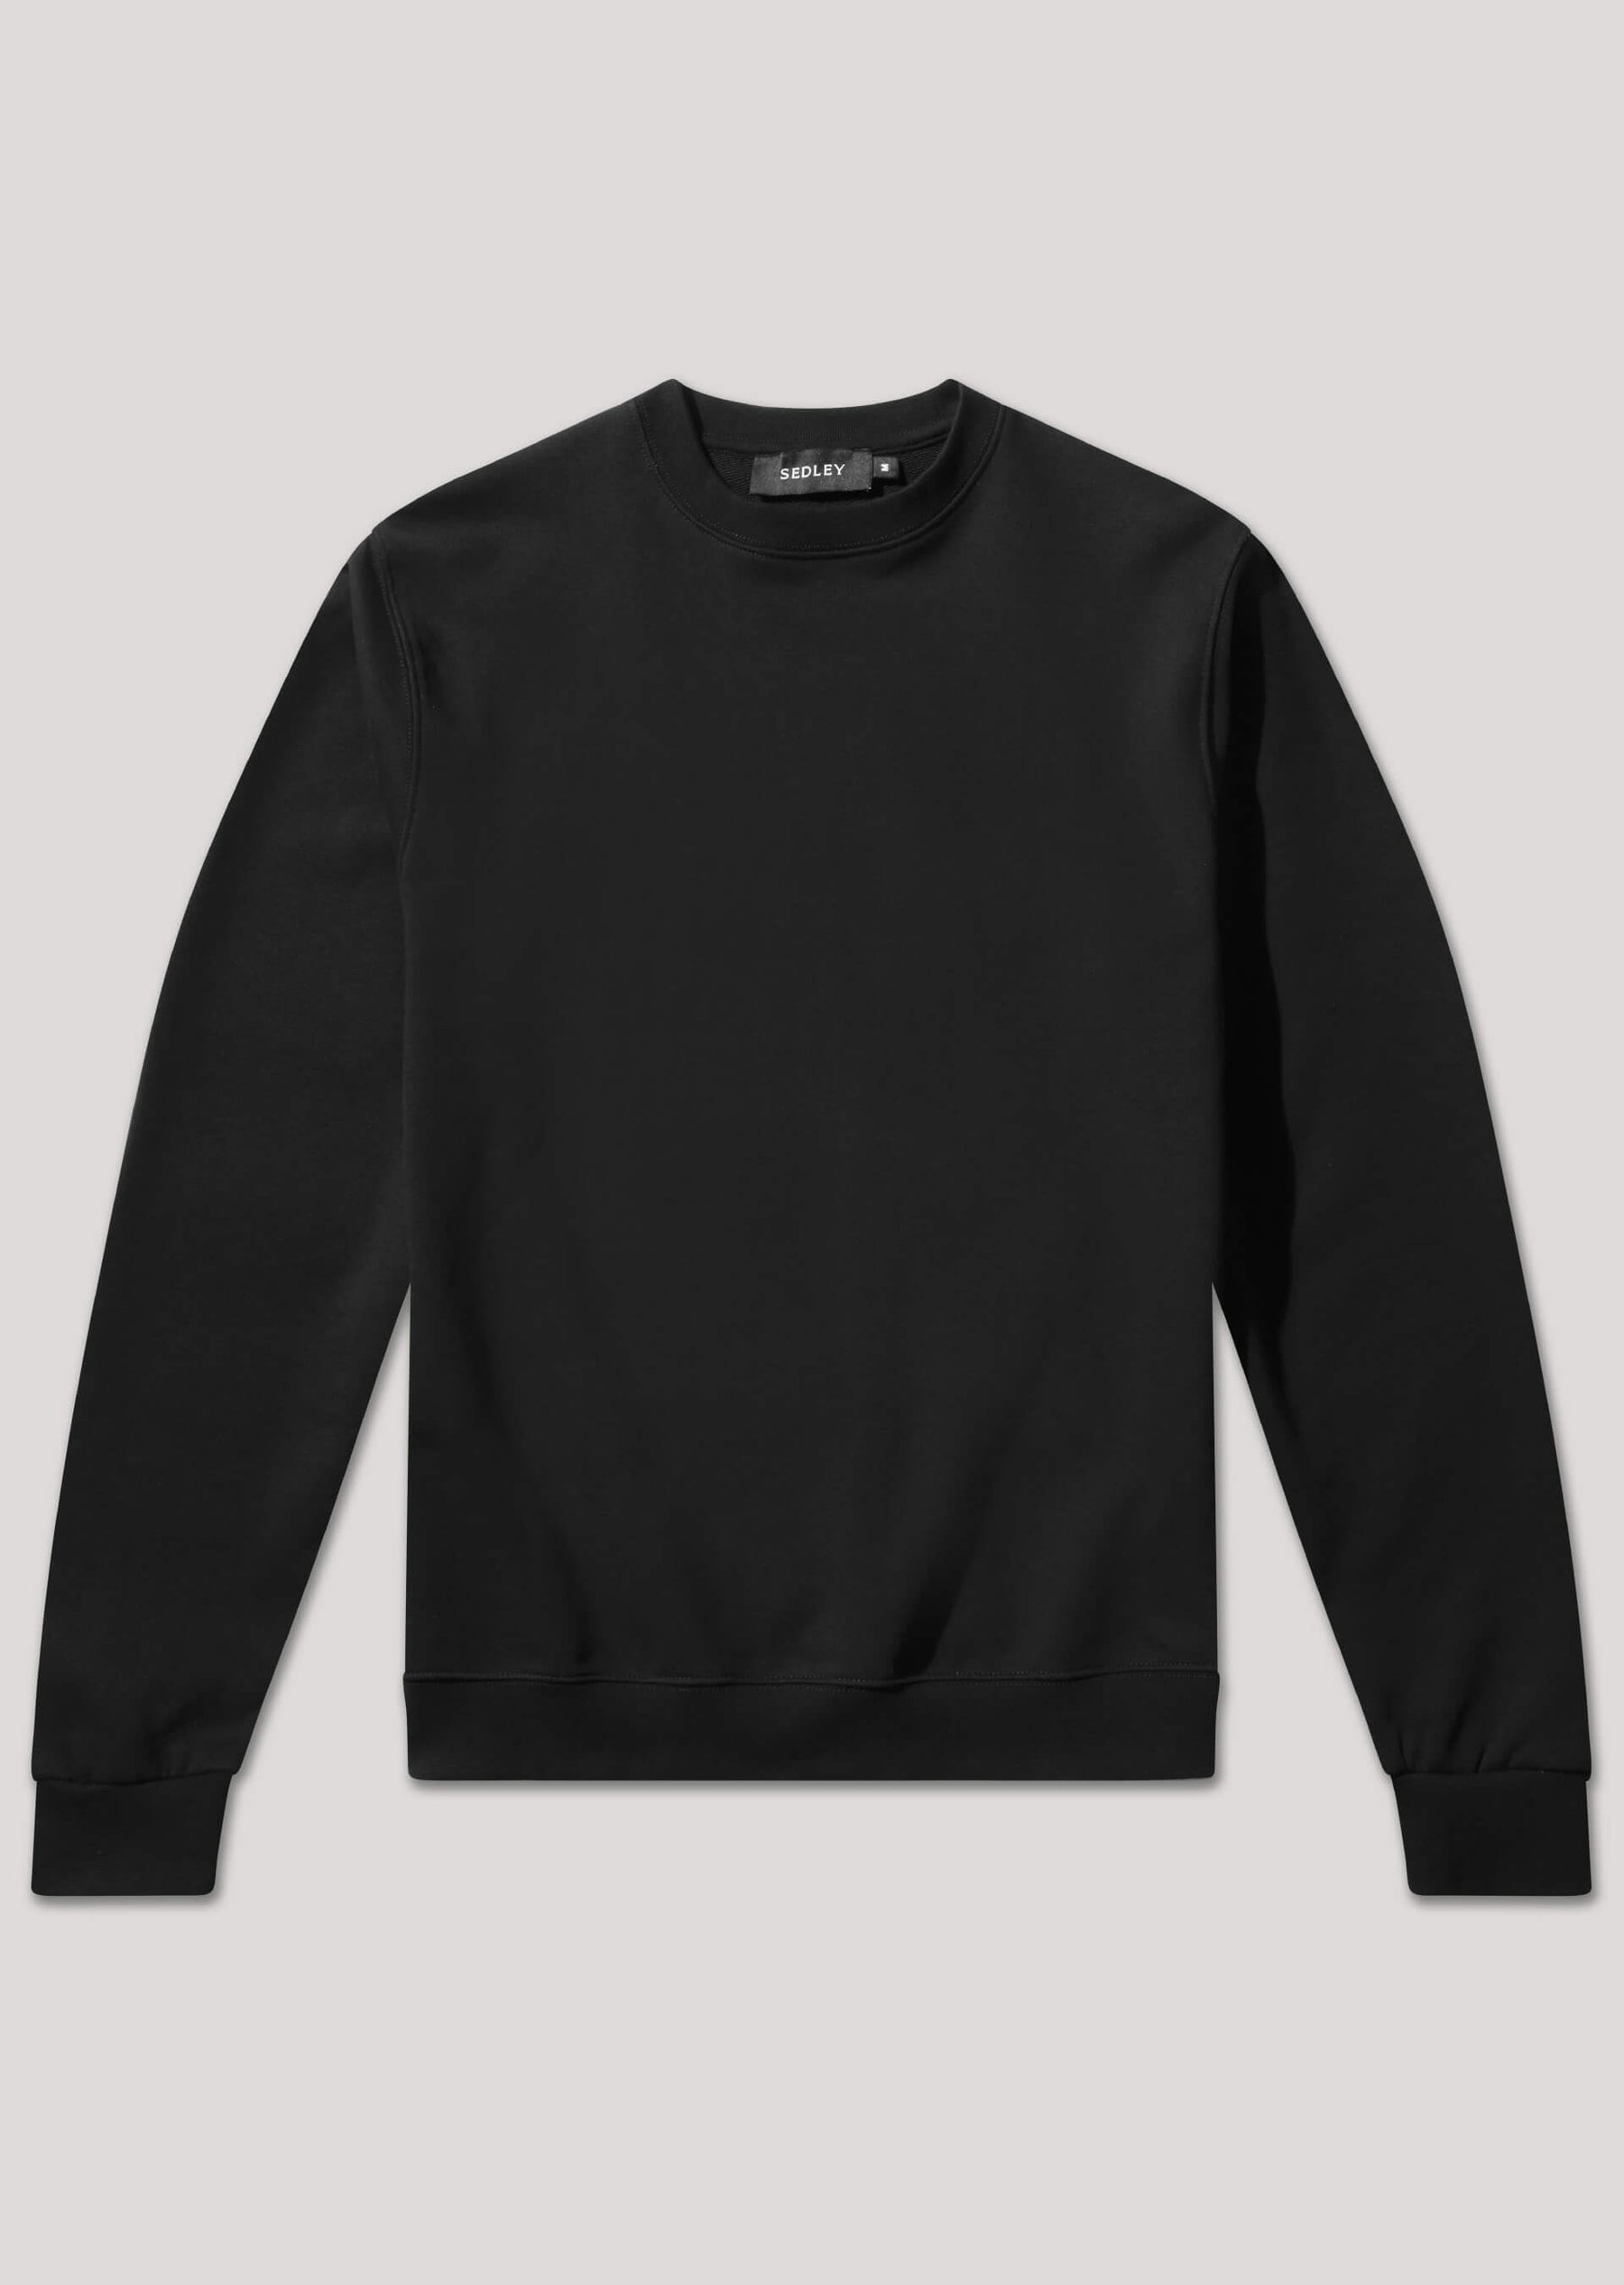 Peate Black Sweatshirt